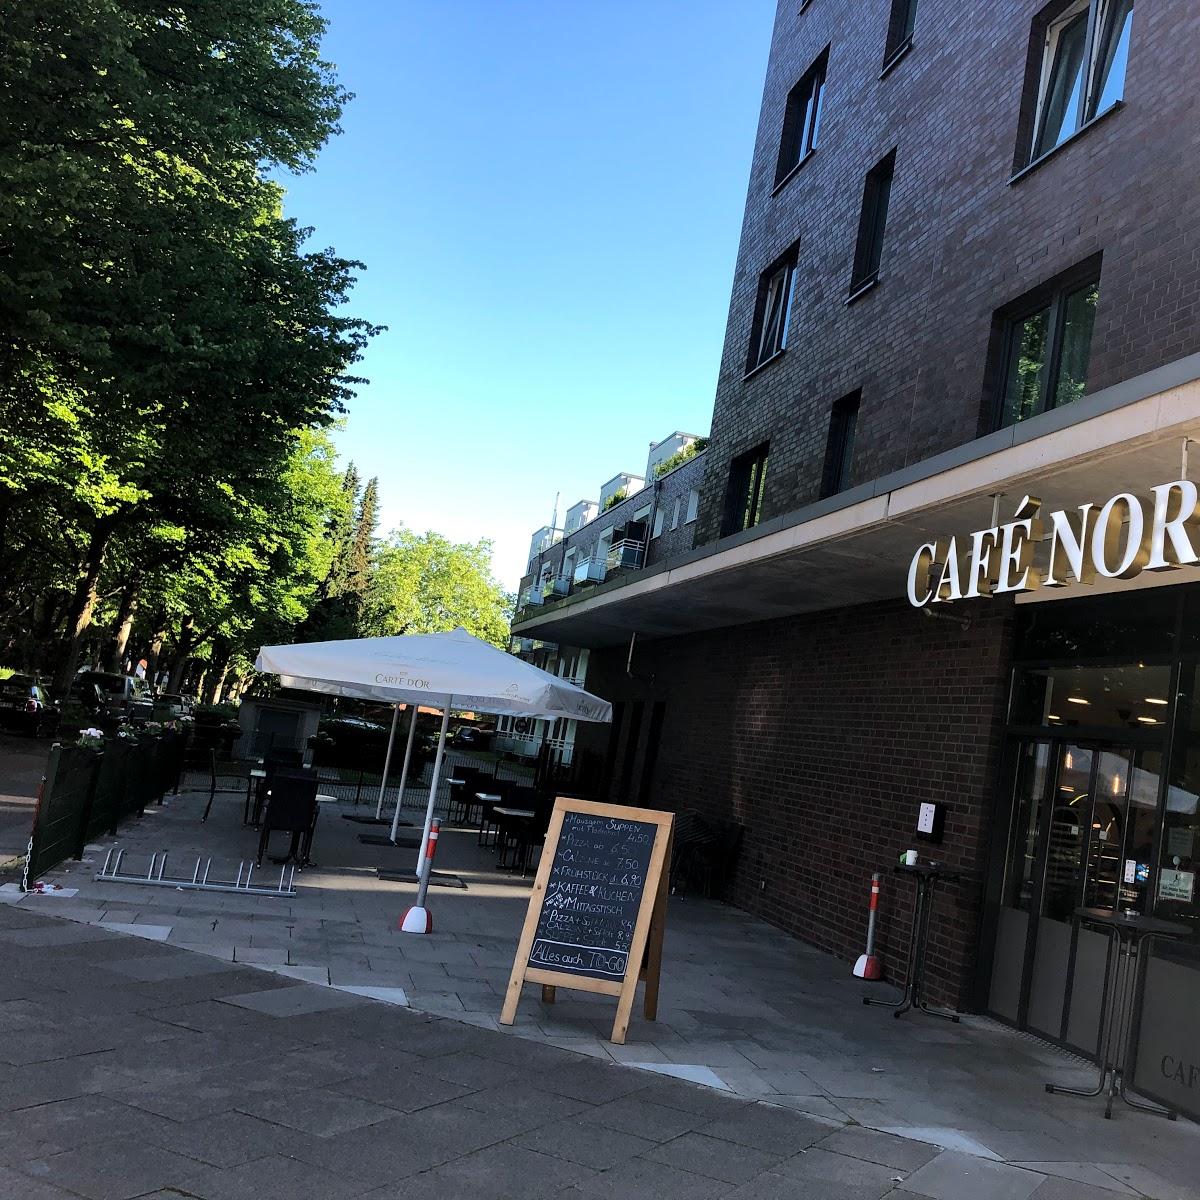 Restaurant "Café Nordwind" in Hamburg